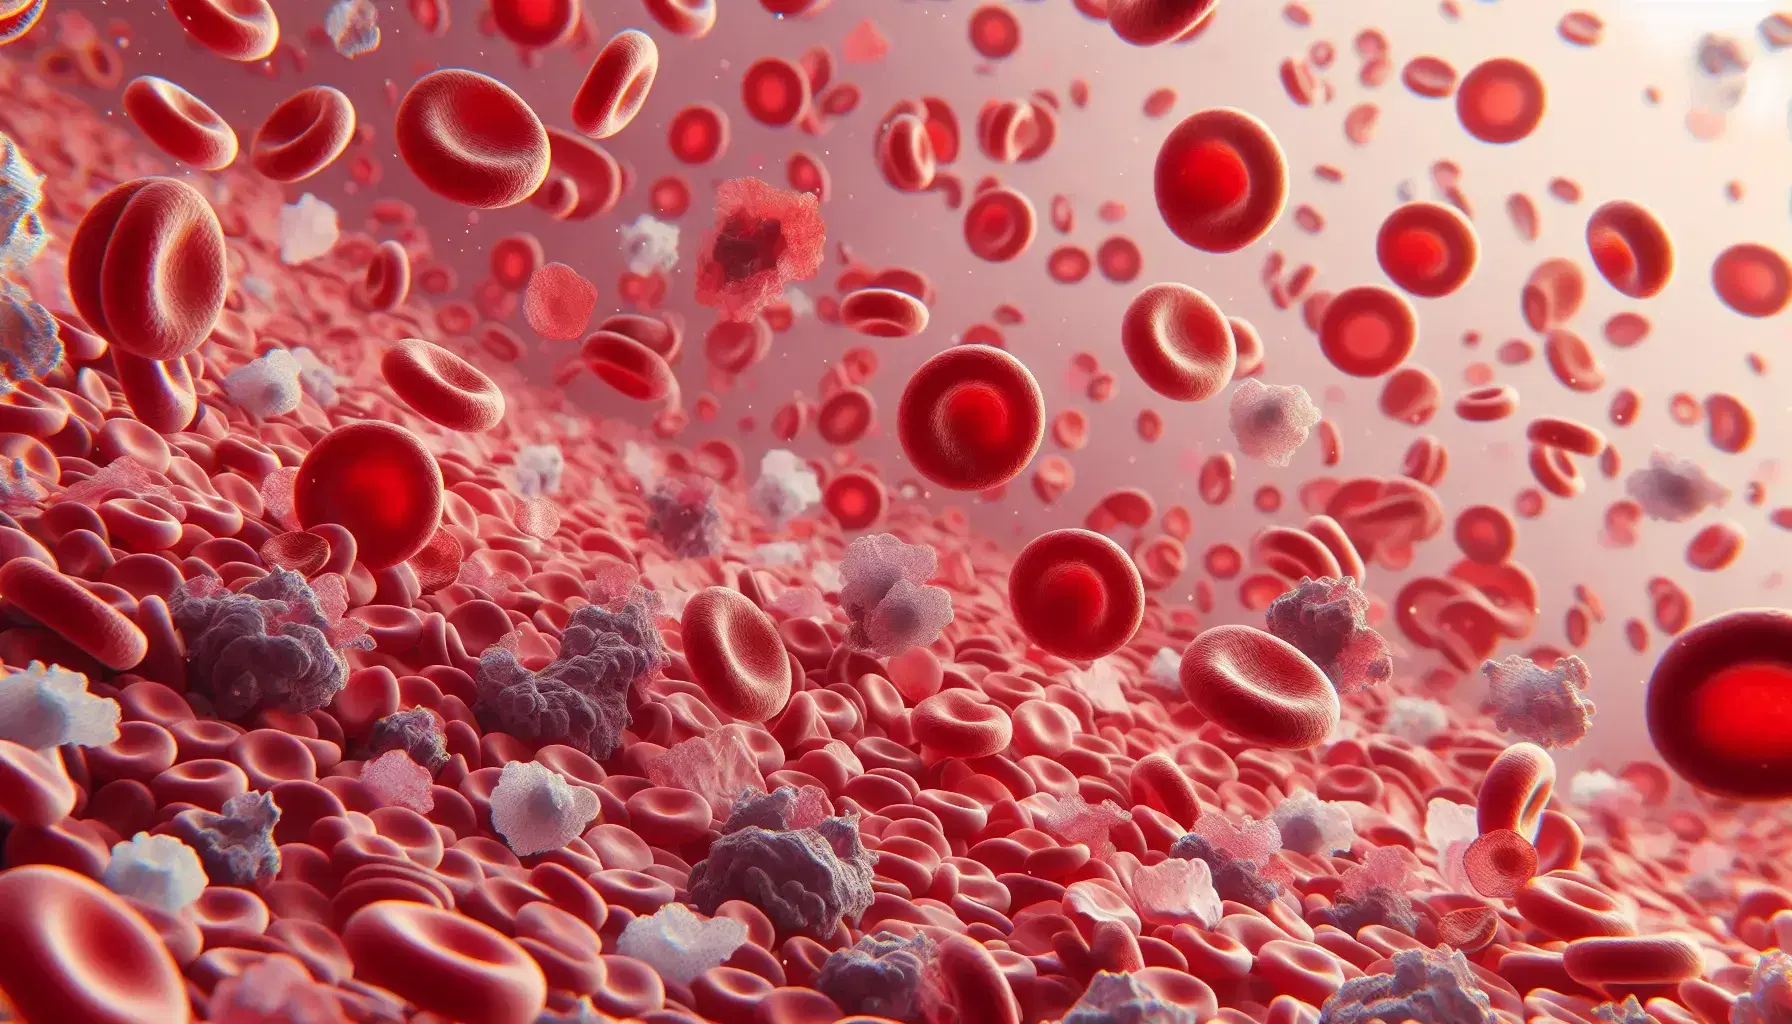 Vista microscópica de células sanguíneas humanas con glóbulos rojos en forma de disco bicóncavo, glóbulos blancos con núcleos irregulares y pequeñas plaquetas.